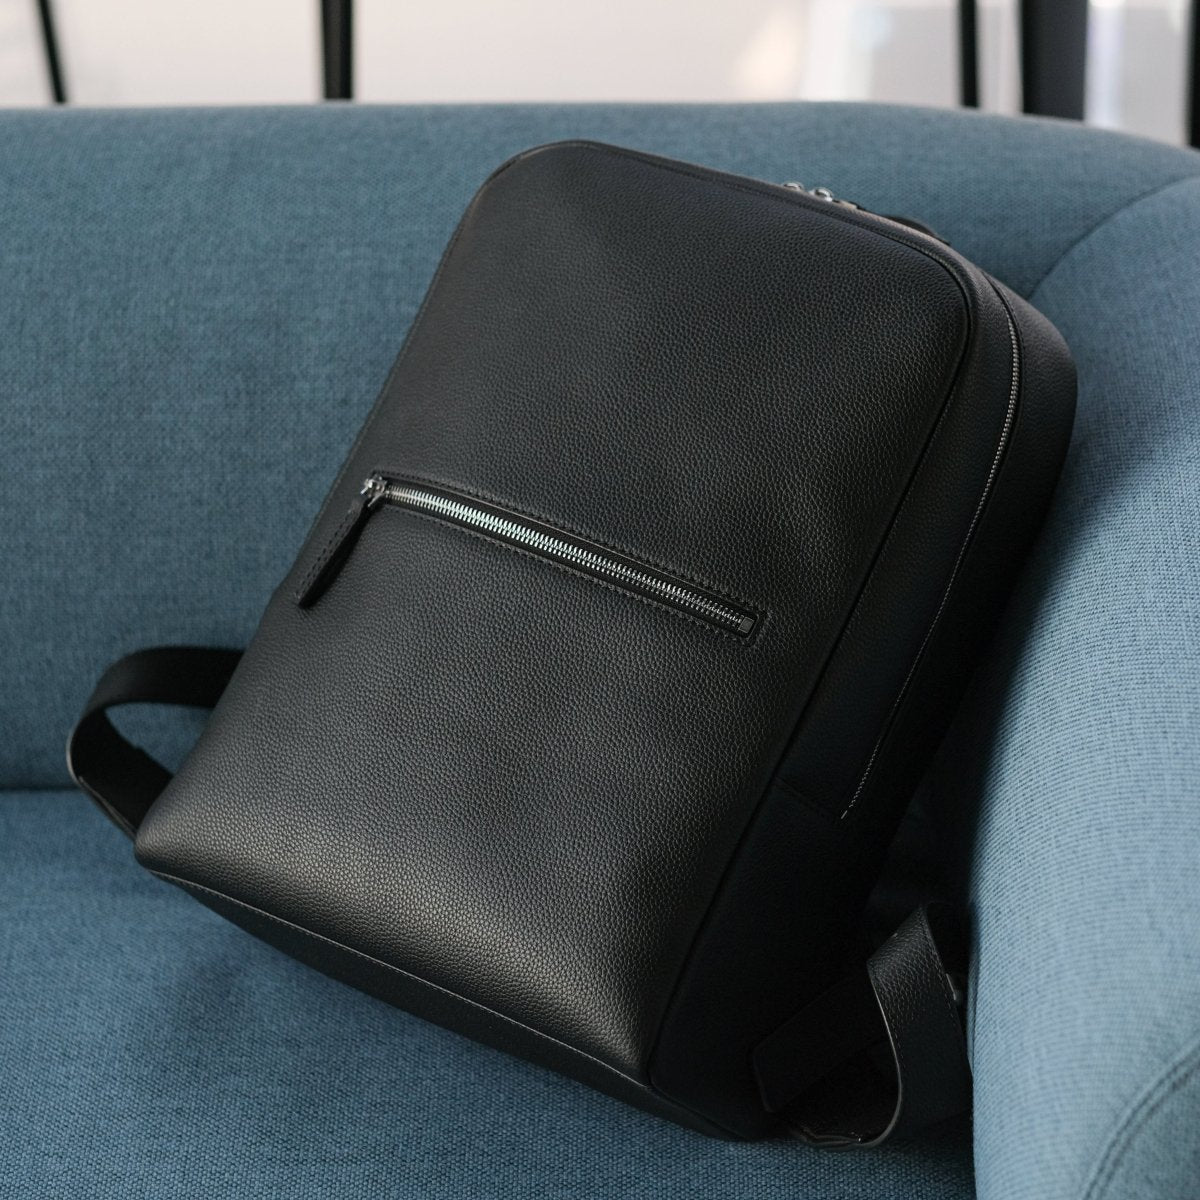 <受注生産4月19日~順次発送>Full Grain Leather Backpack - aucentic